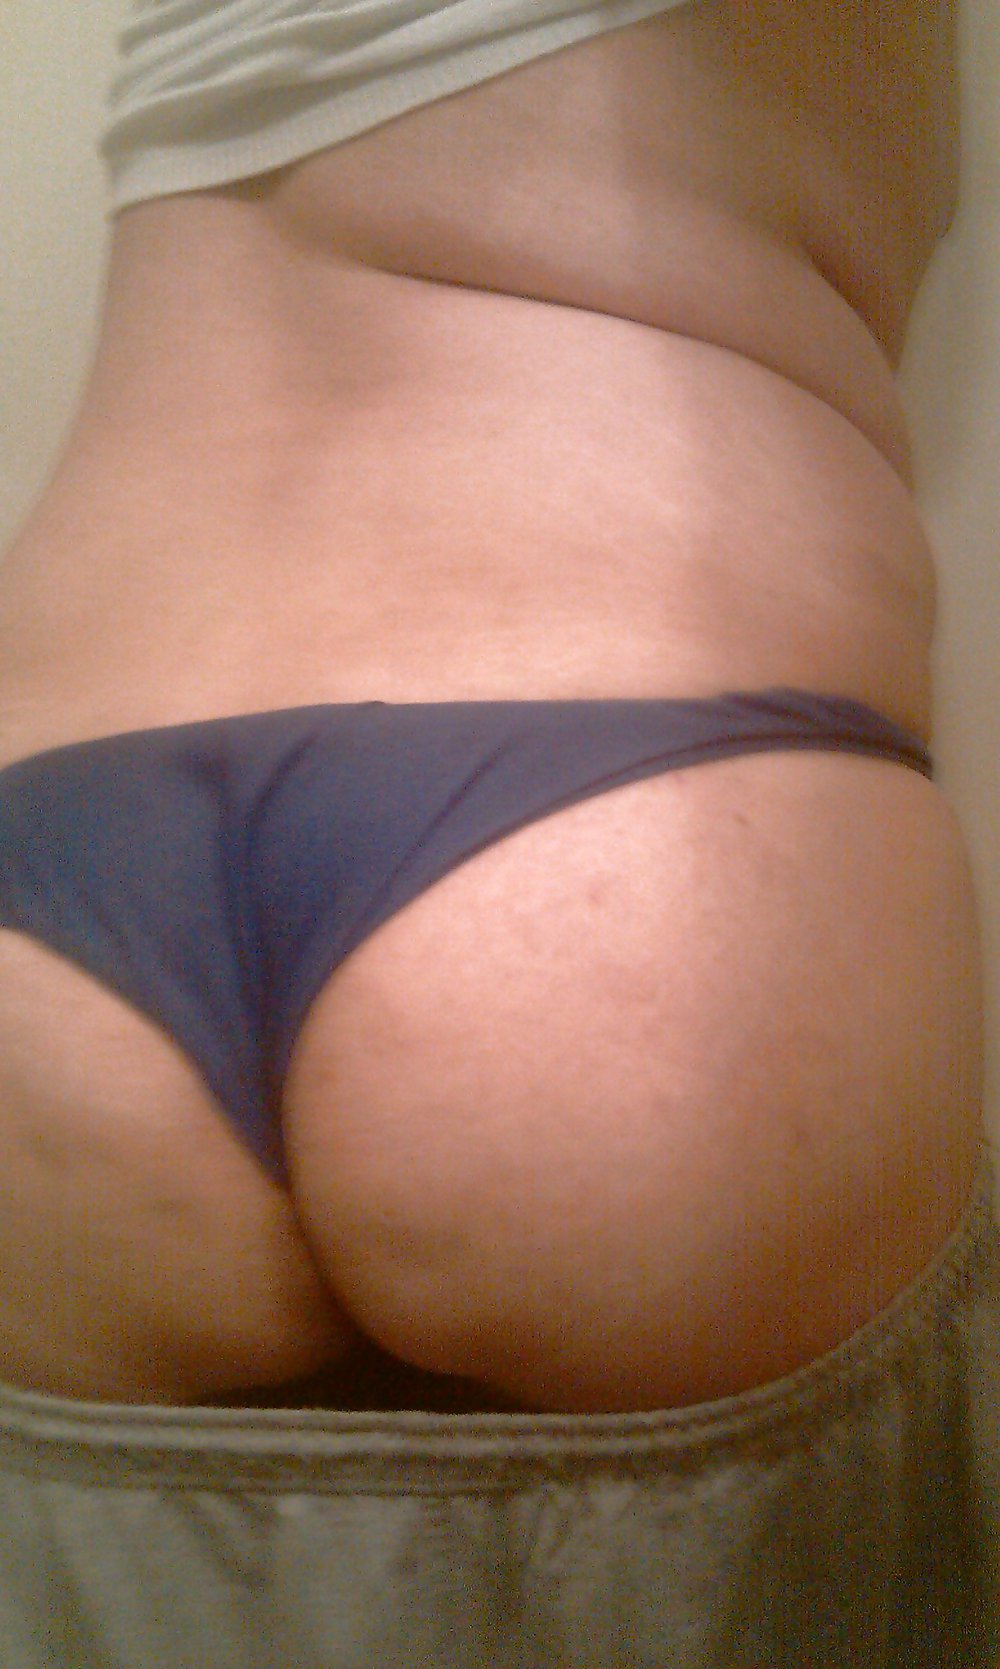 Sex my ass pics holla if u like image